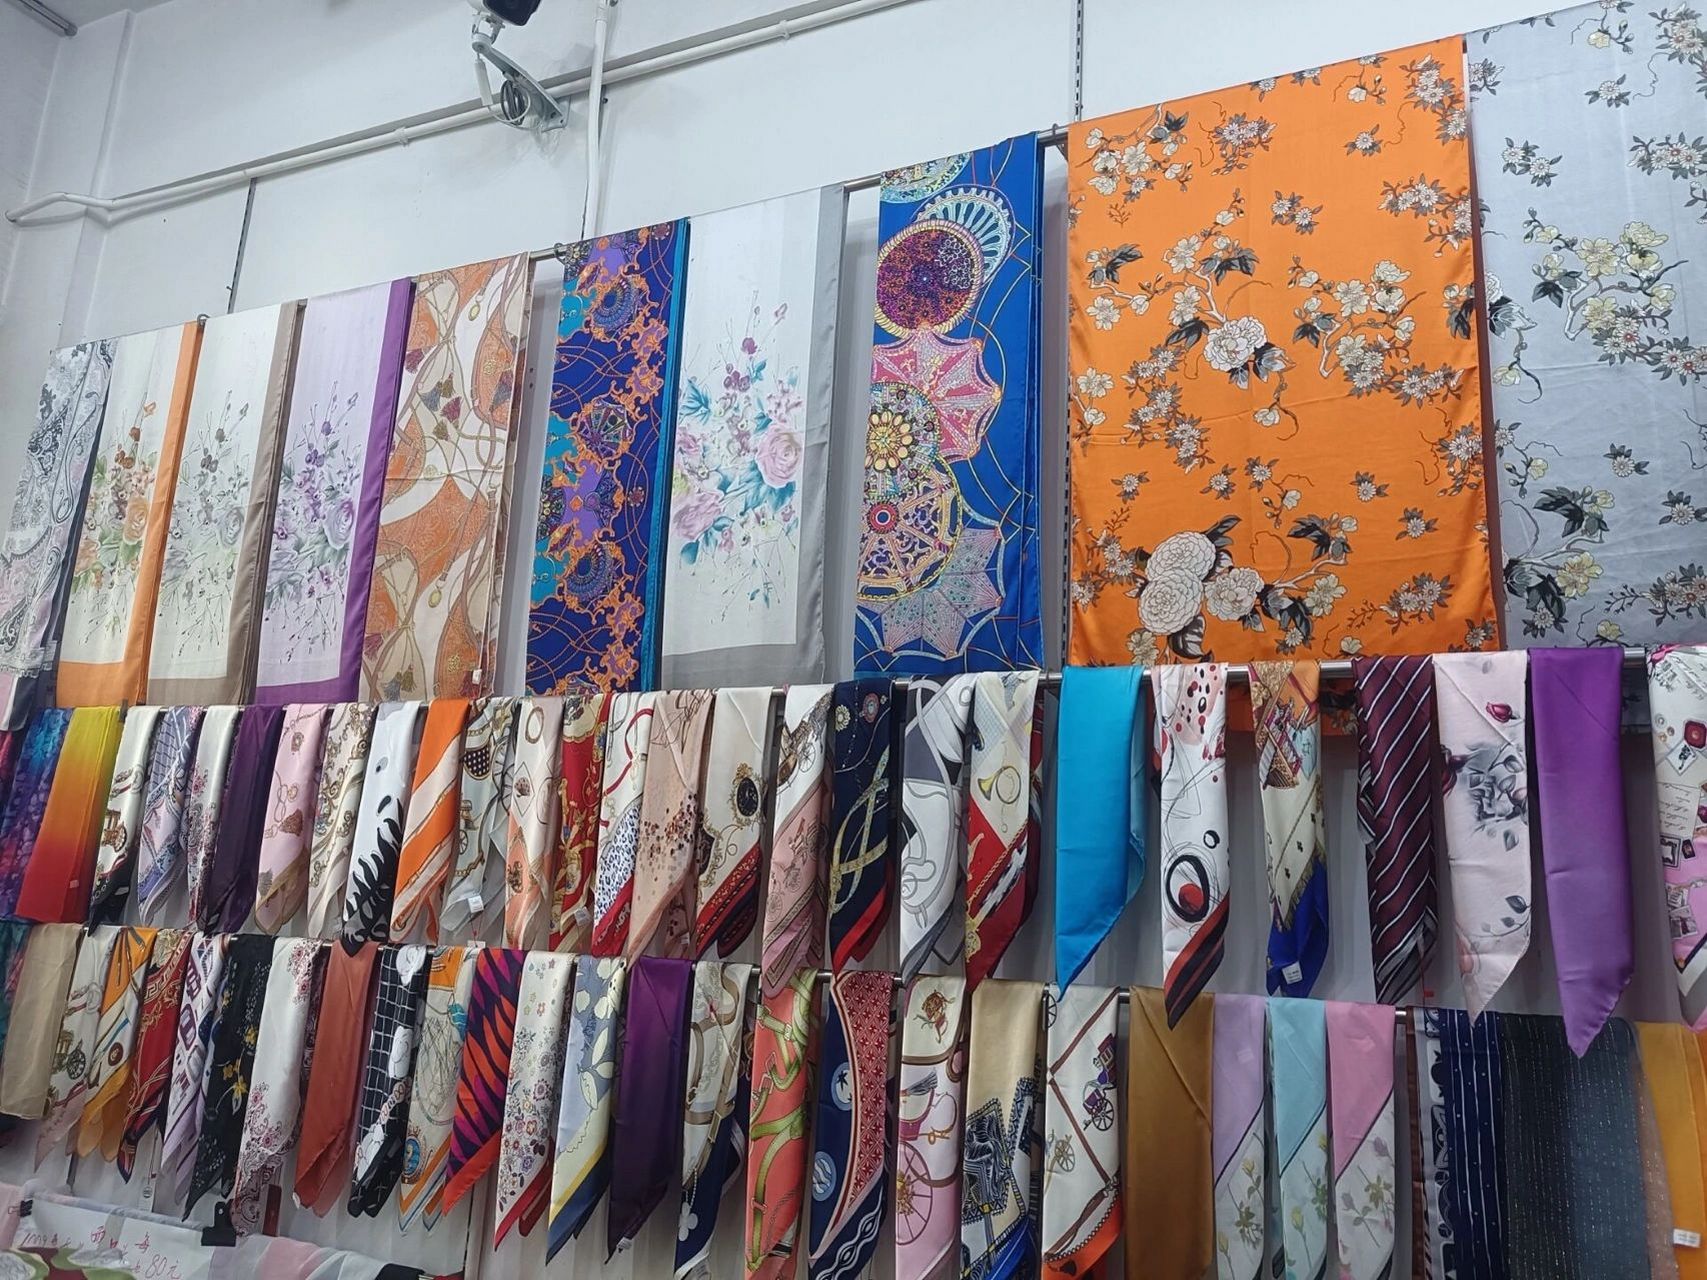 苏州丝绸市场图片